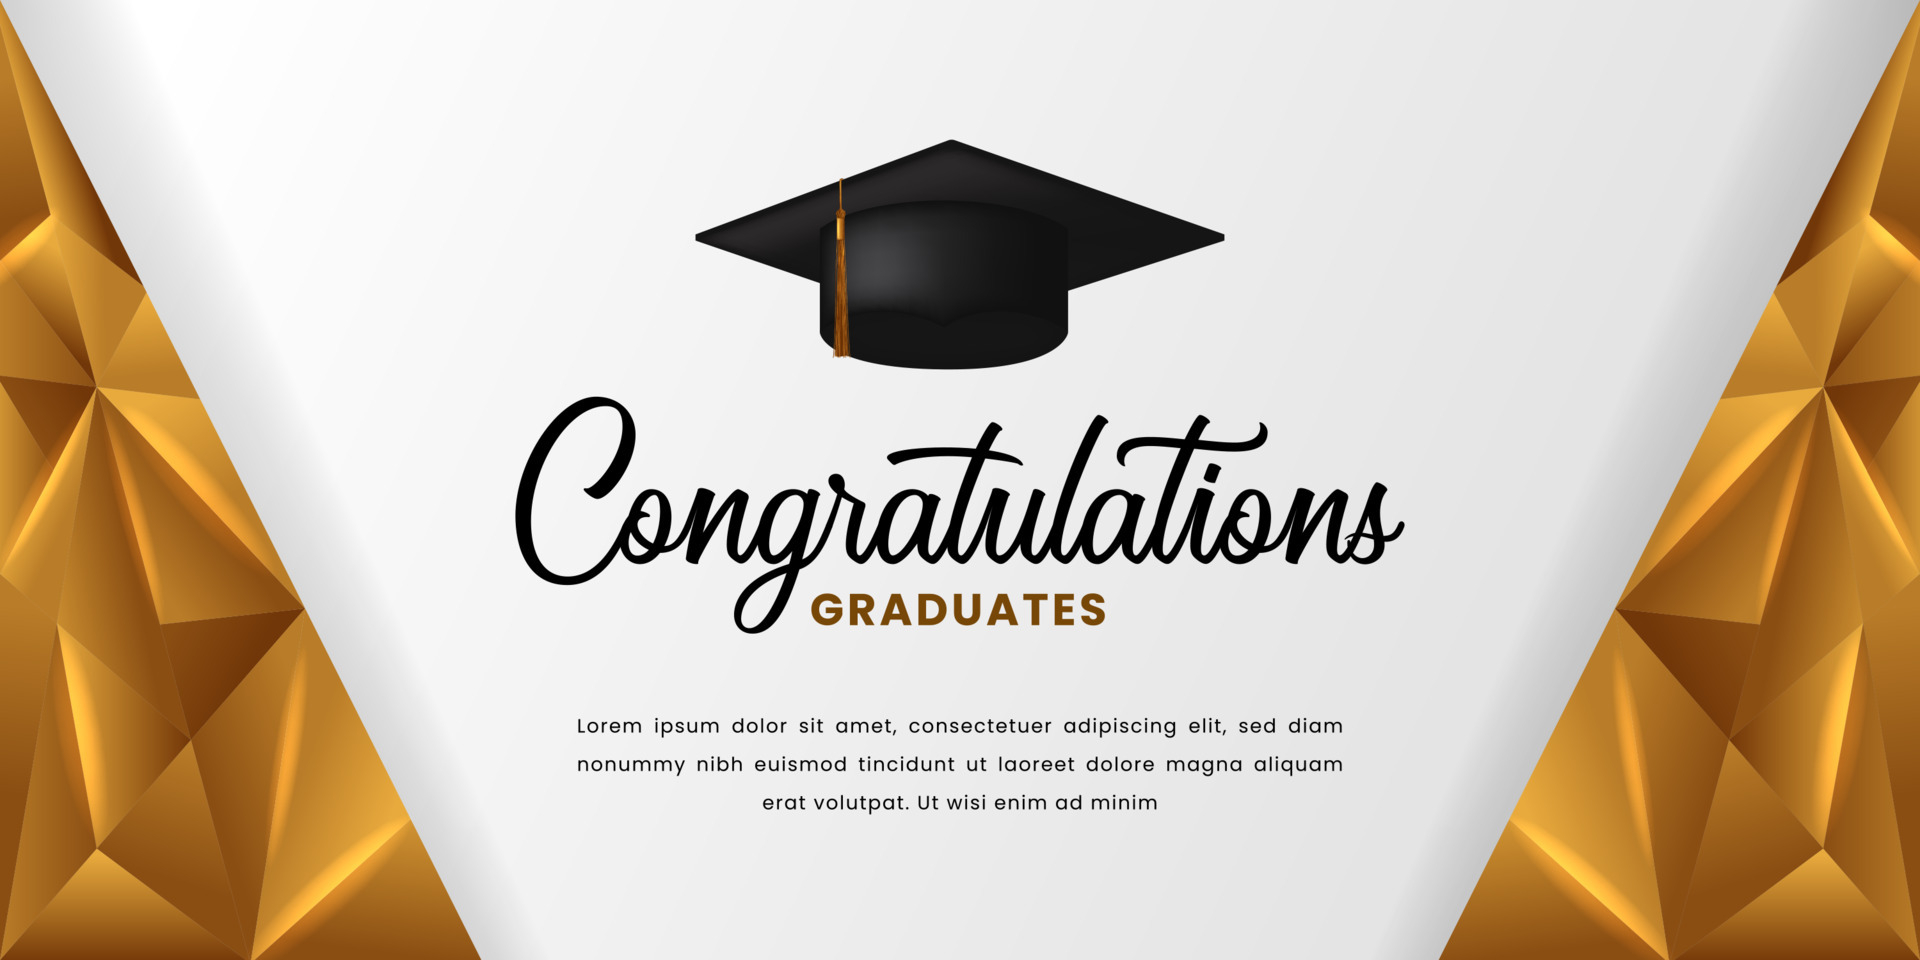 Happy graduation congratulation with 10d graduation cap and golden